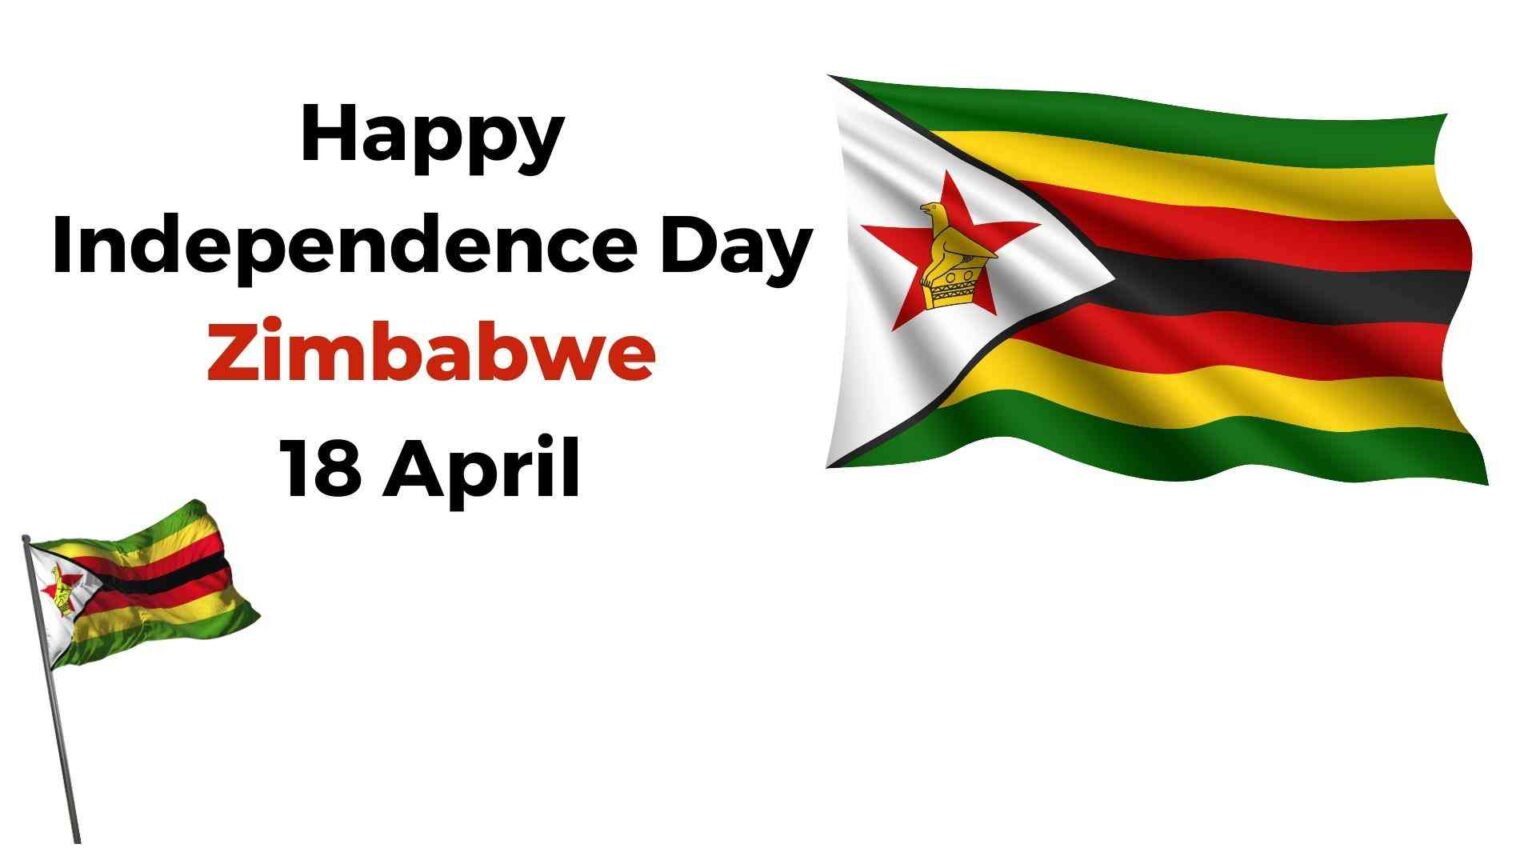 Stage set for Uhuru celebrations : Zimbabwe’s 44th Independence Day